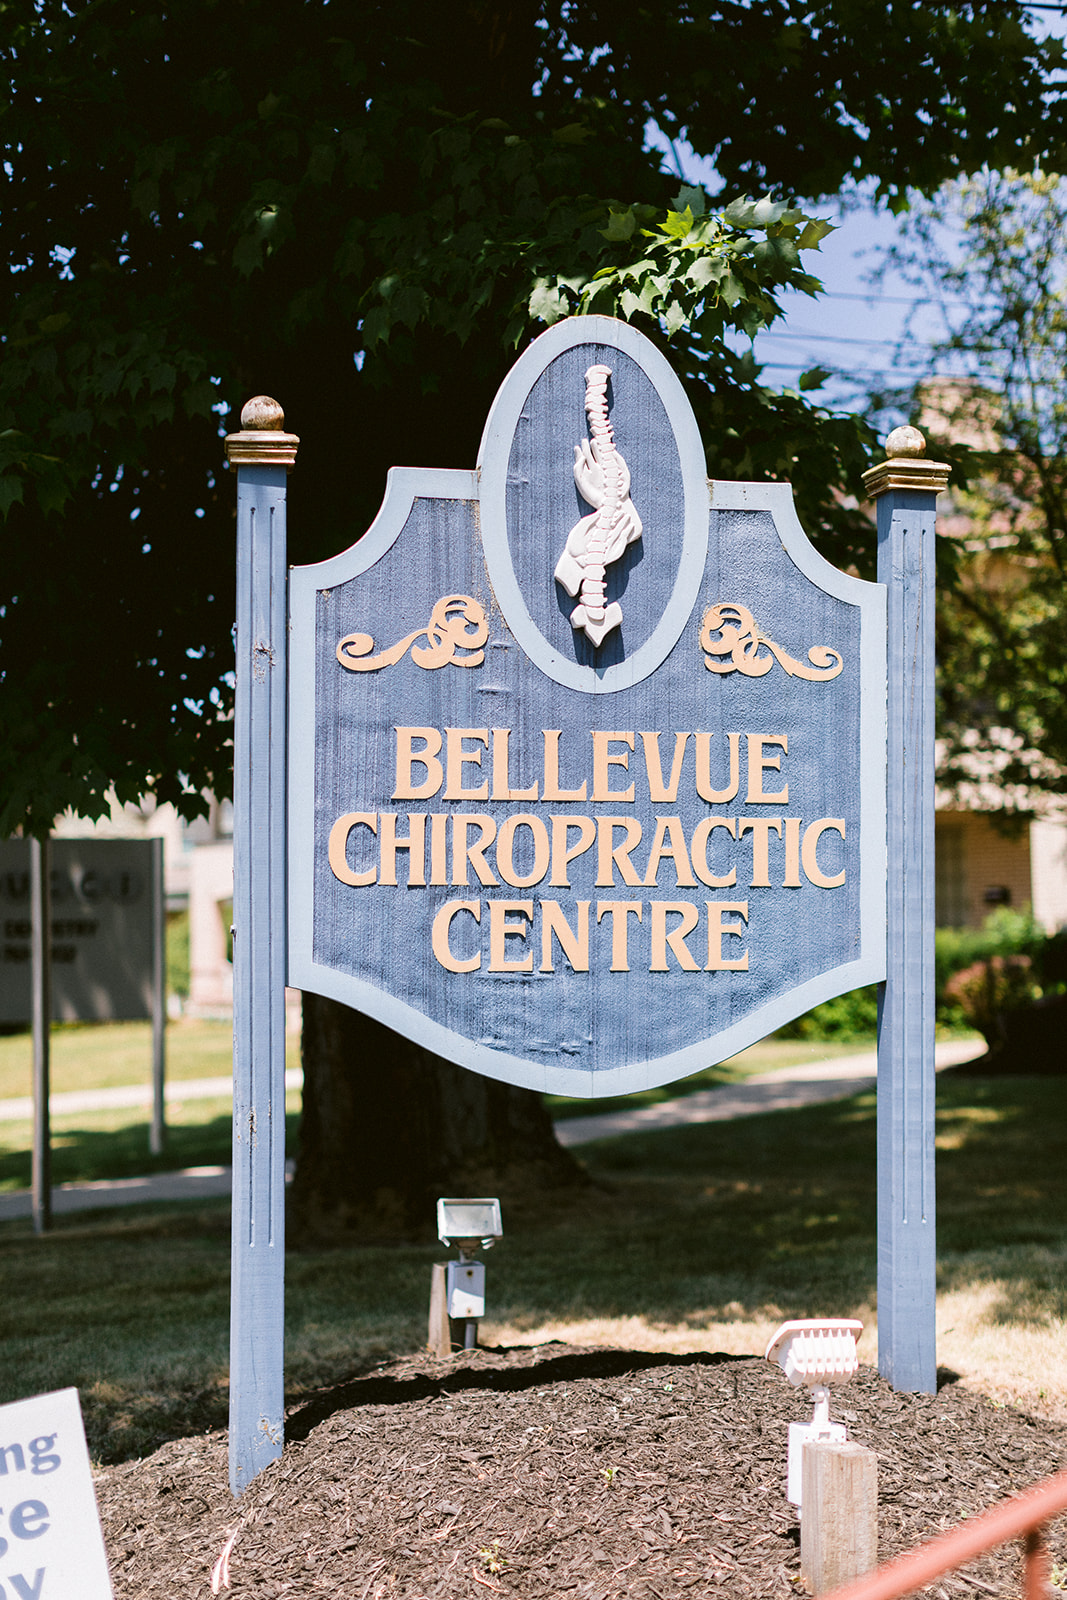 Bellevue Chiropractic Centre